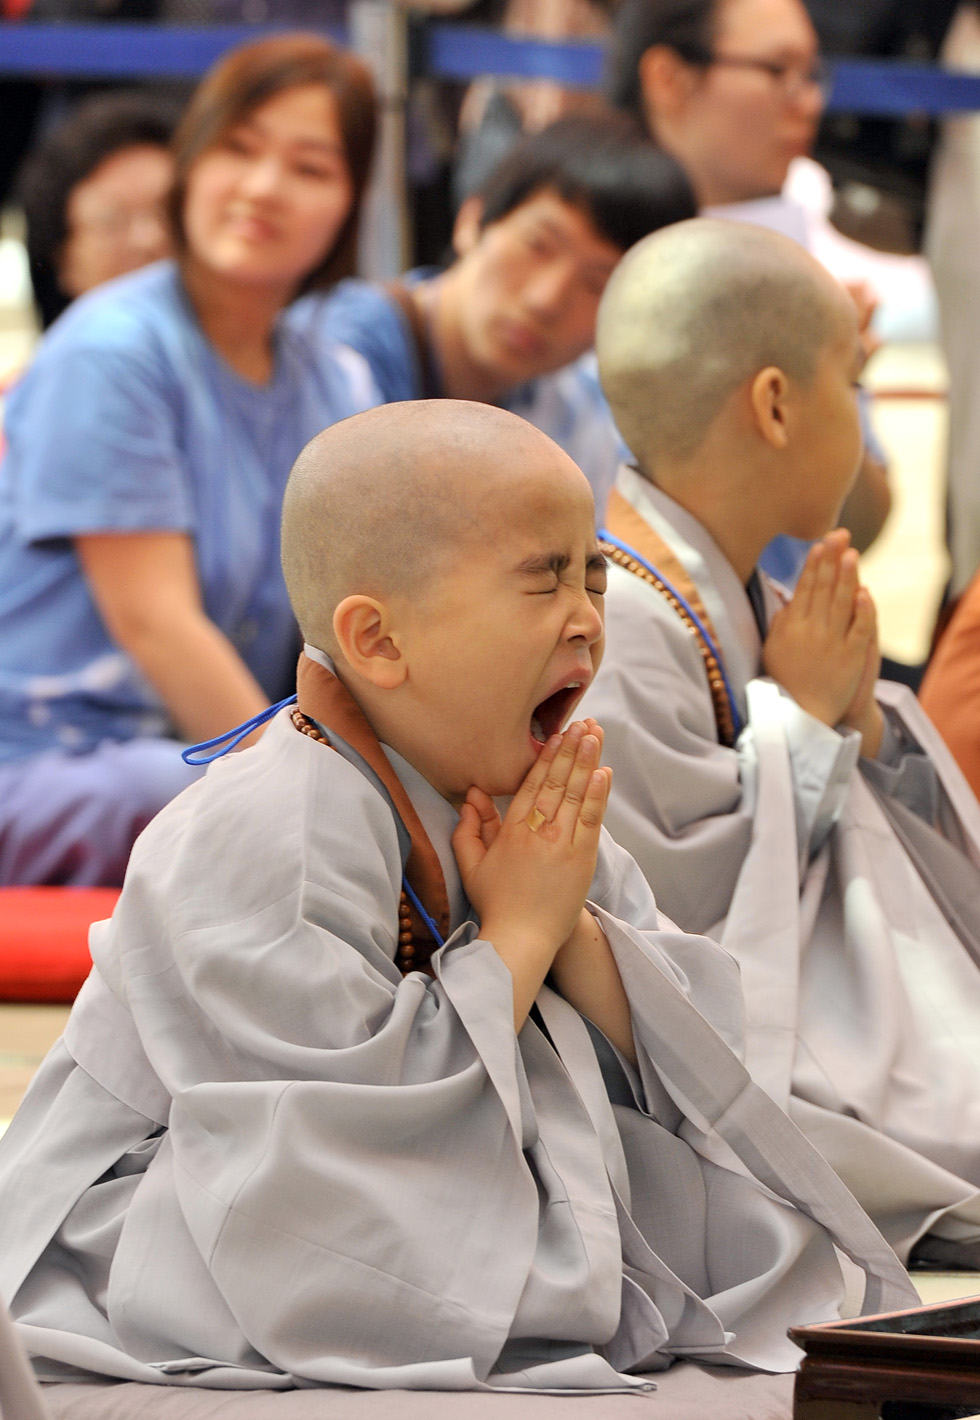 Un bambino sudcoreano durante la cerimonia "Bambini che diventano monaci buddisti" nel tempio Jogye a Seul, il 13 maggio 2012 (JUNG YEON-JE/AFP/GettyImages)